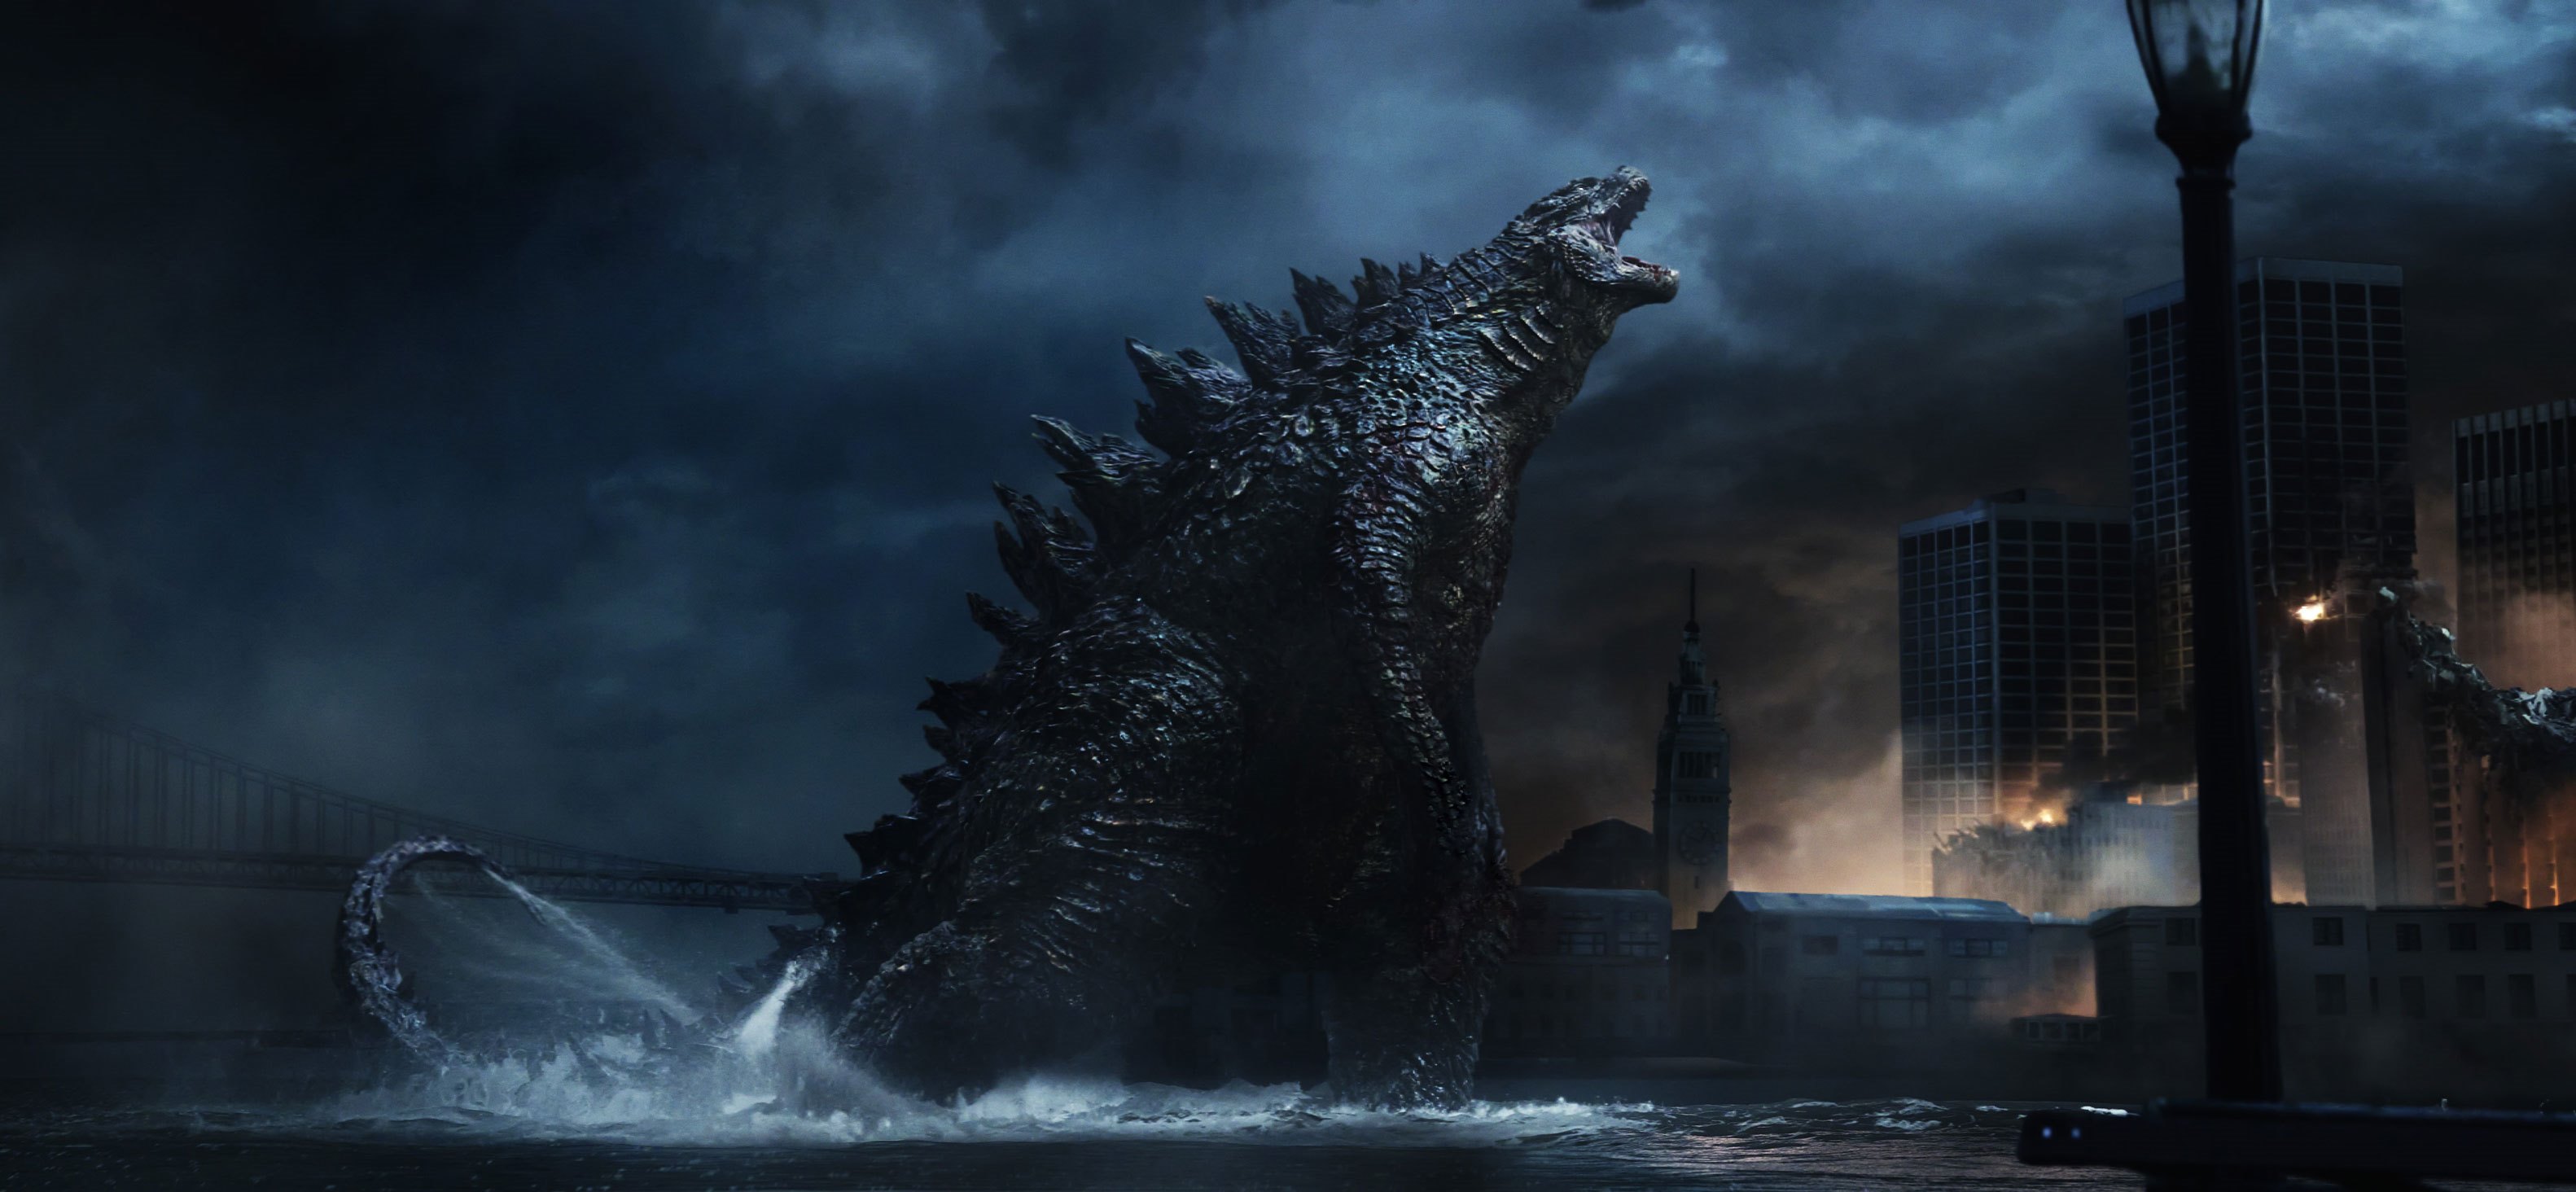 The new American Godzilla in Godzilla (2014)